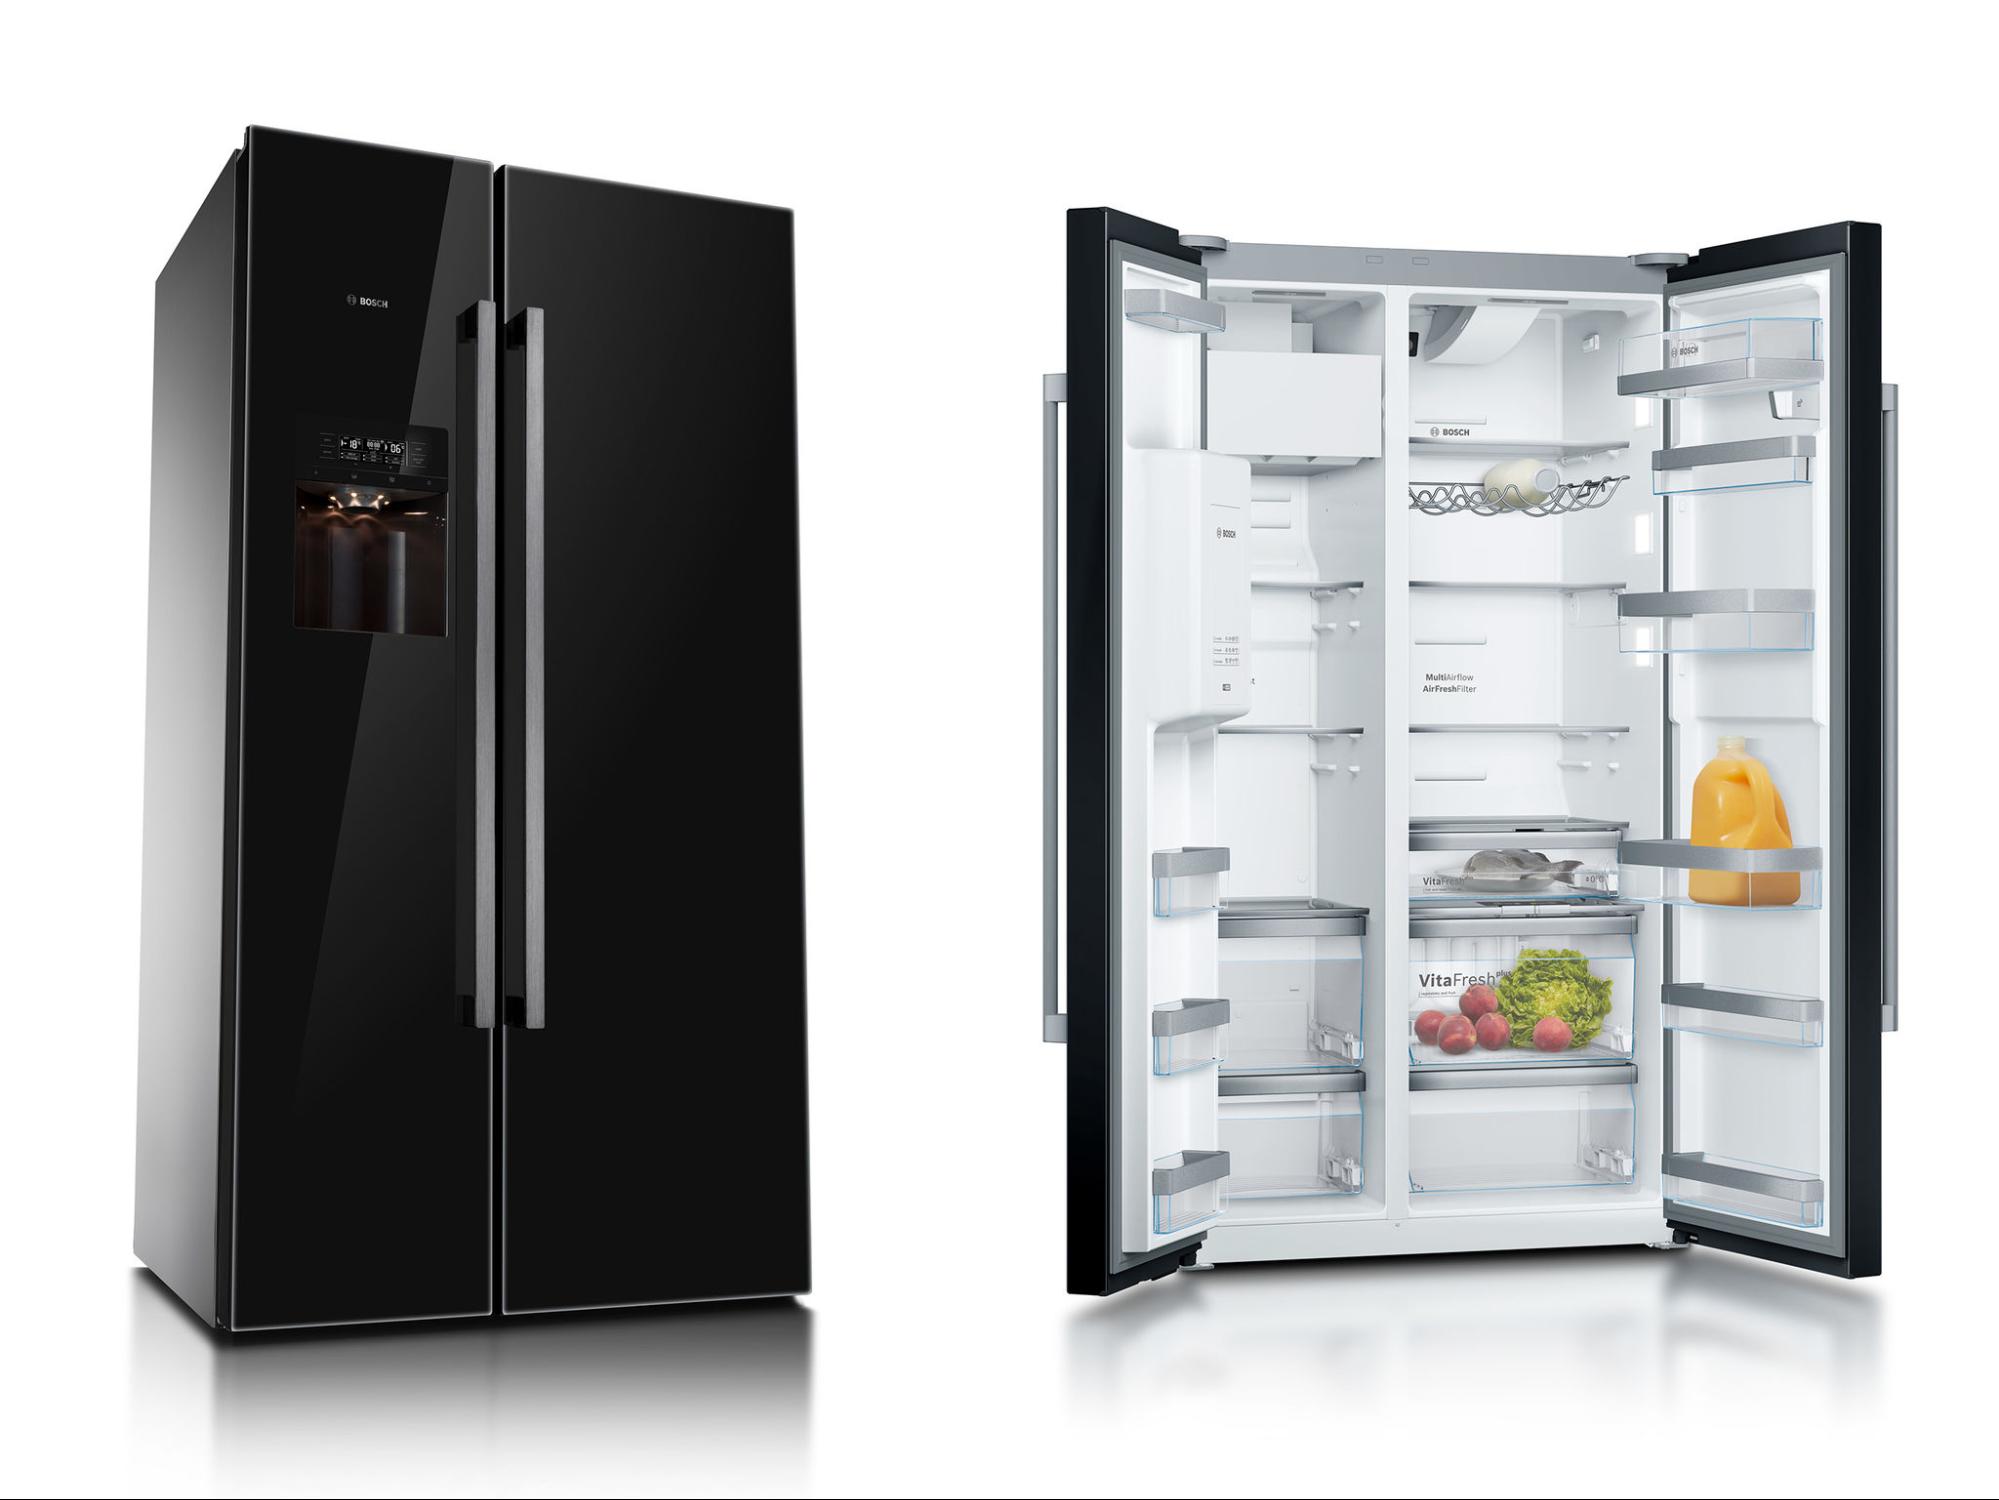 Tủ lạnh Bosch trải qua hàng trăm lần kiểm tra chất lượng đạt chuẩn tối ưu trước khi xuất xưởng